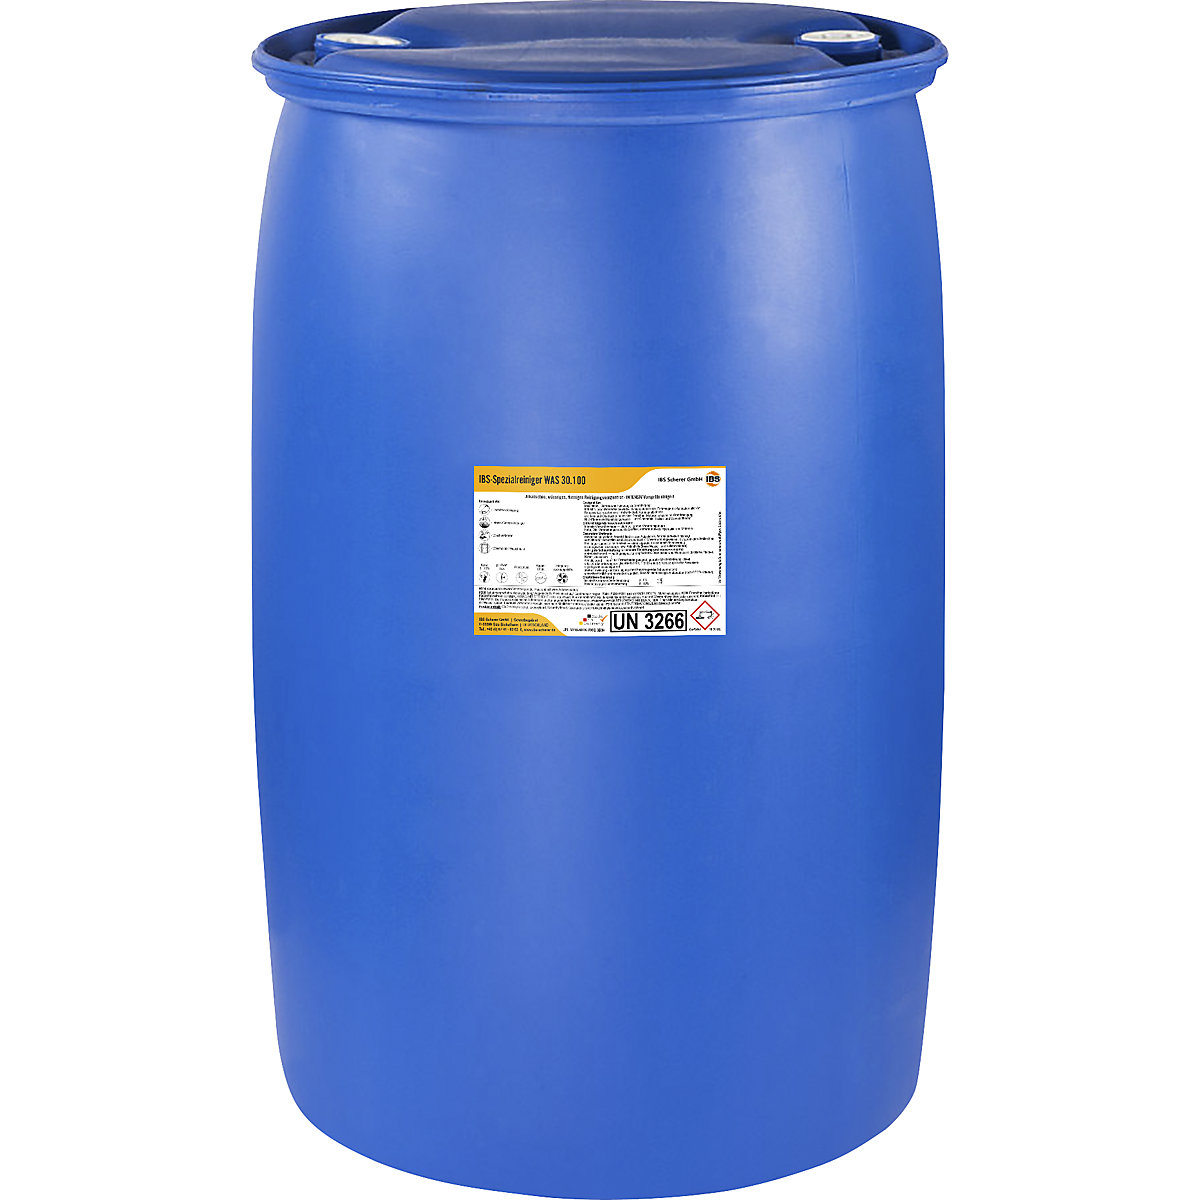 Limpiador de alta presión/limpiador por aspersión WAS 30.100 – IBS Scherer, valor pH 13,5, contenido 200 l-6